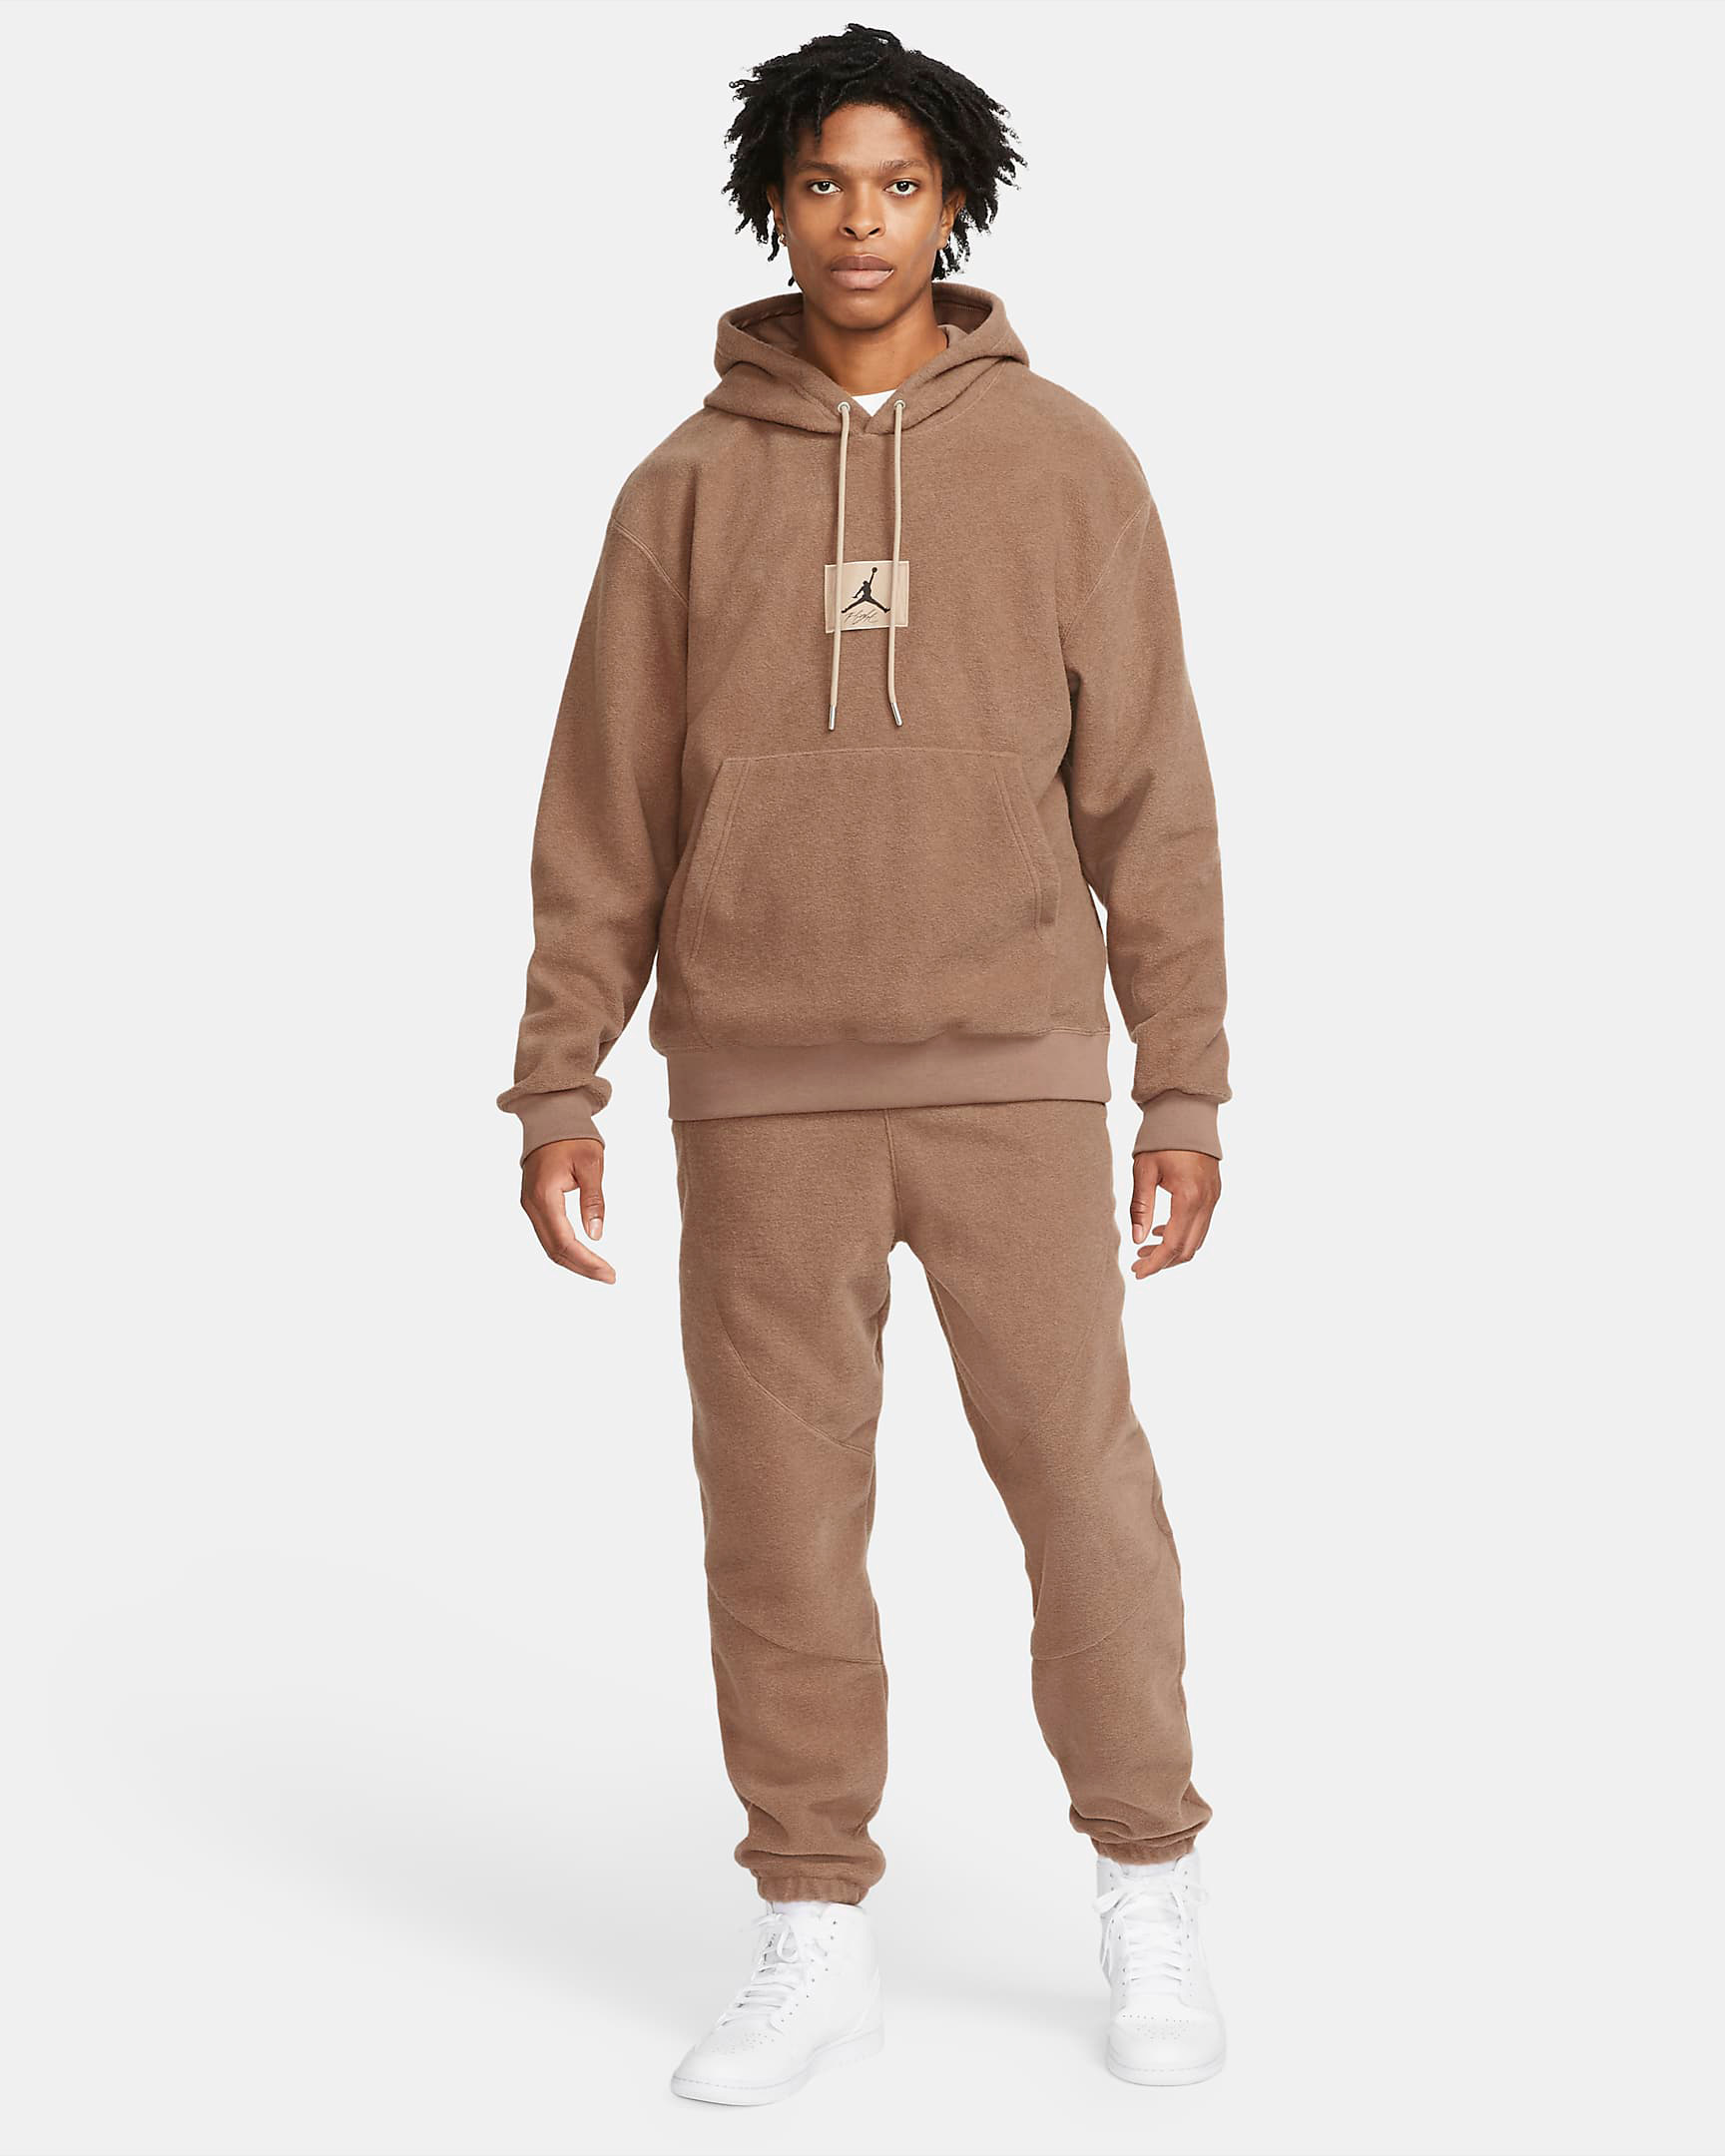 jordan-archaeo-brown-flight-heritage-hoodie-pants-outfit